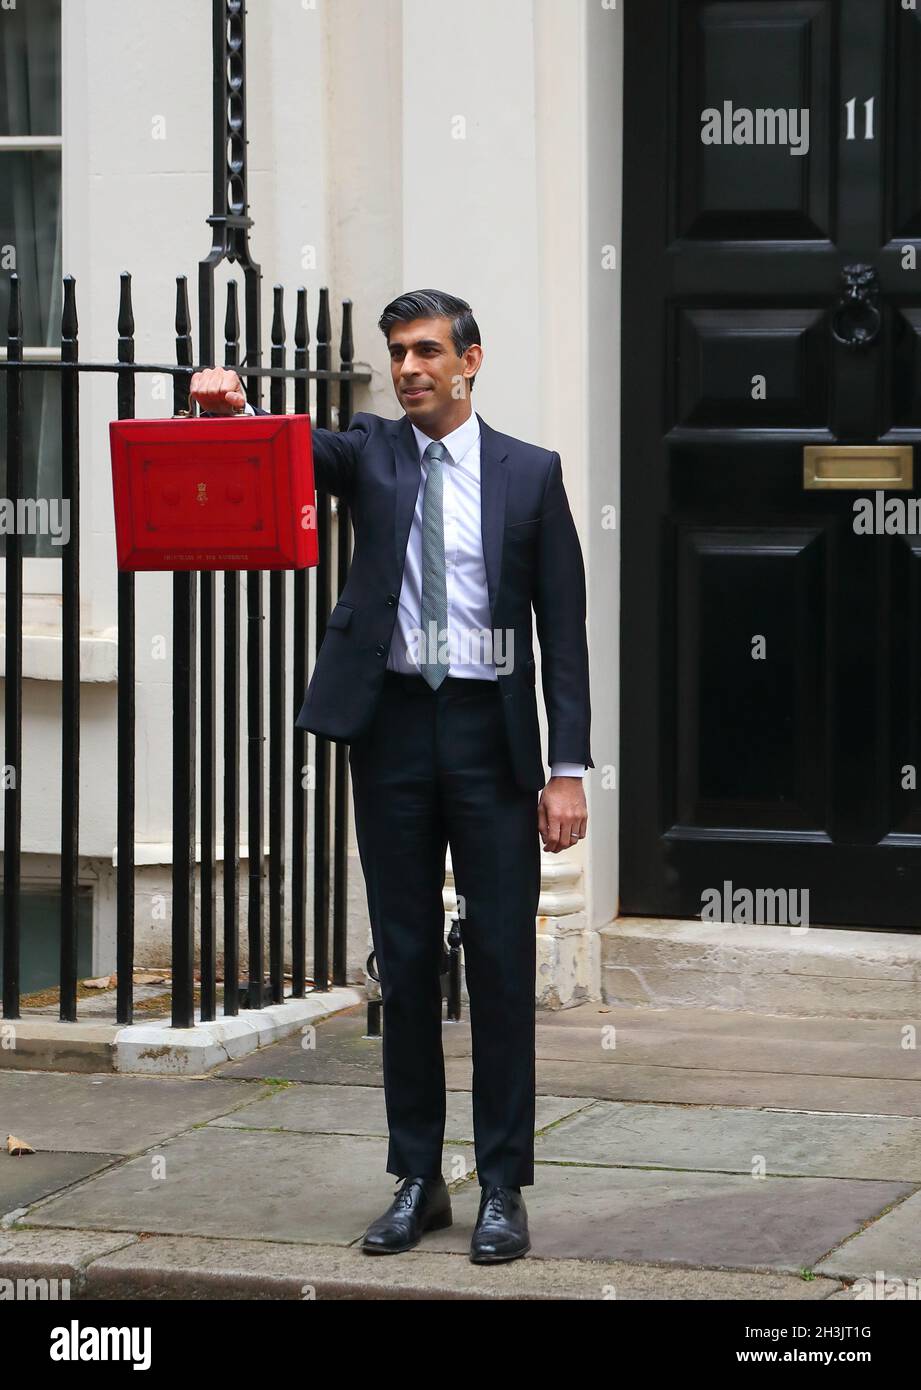 Londres, Angleterre, Royaume-Uni.27 octobre 2021.Le chancelier de l’Échiquier RISHI SUNAK tient la case rouge à l’extérieur du 11 Downing Street avant de partir pour la Chambre des communes pour révéler le budget. Banque D'Images